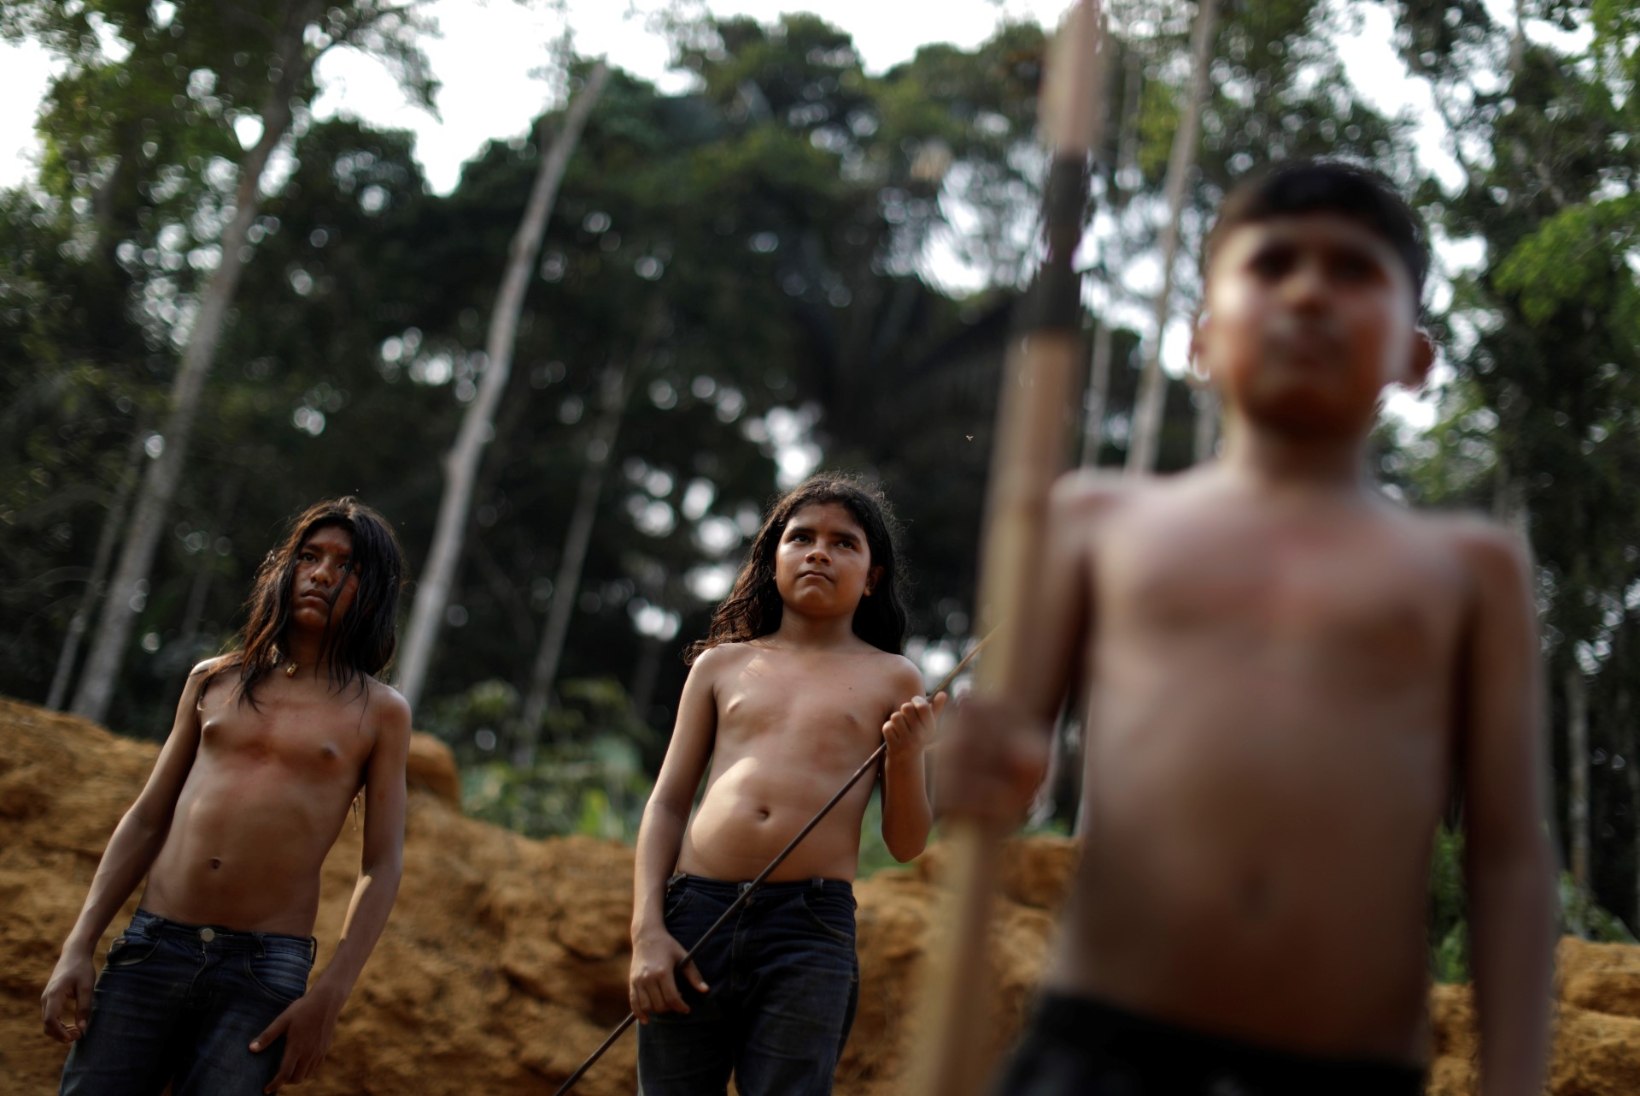 AMAZONAS OHUS: lekkinud saladokumendid paljastavad Brasiilia presidendi sünged plaanid „maakera kopsude“ tulevikuks